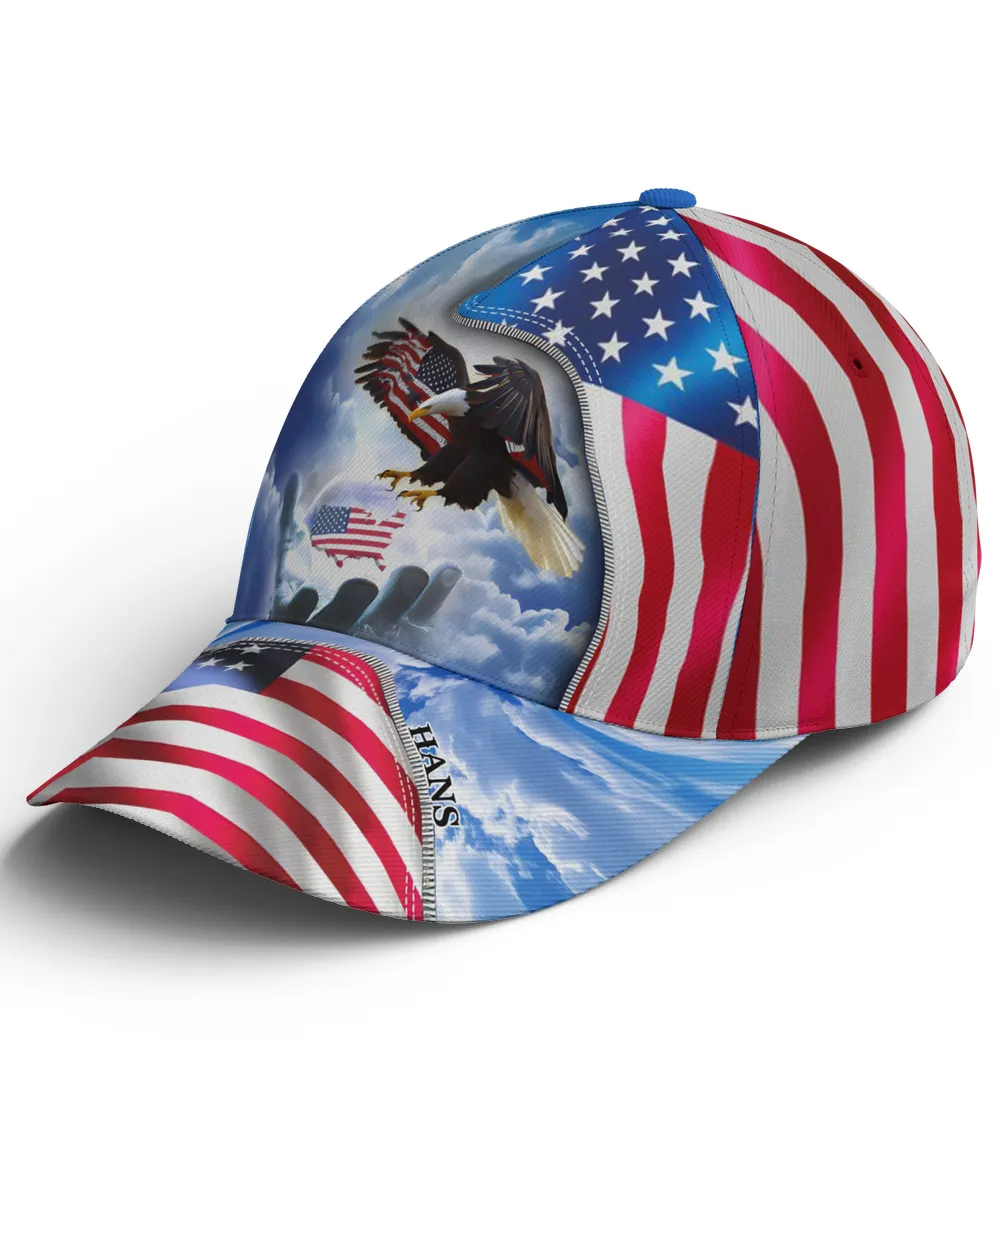 Hans Eagle American Flag Cap